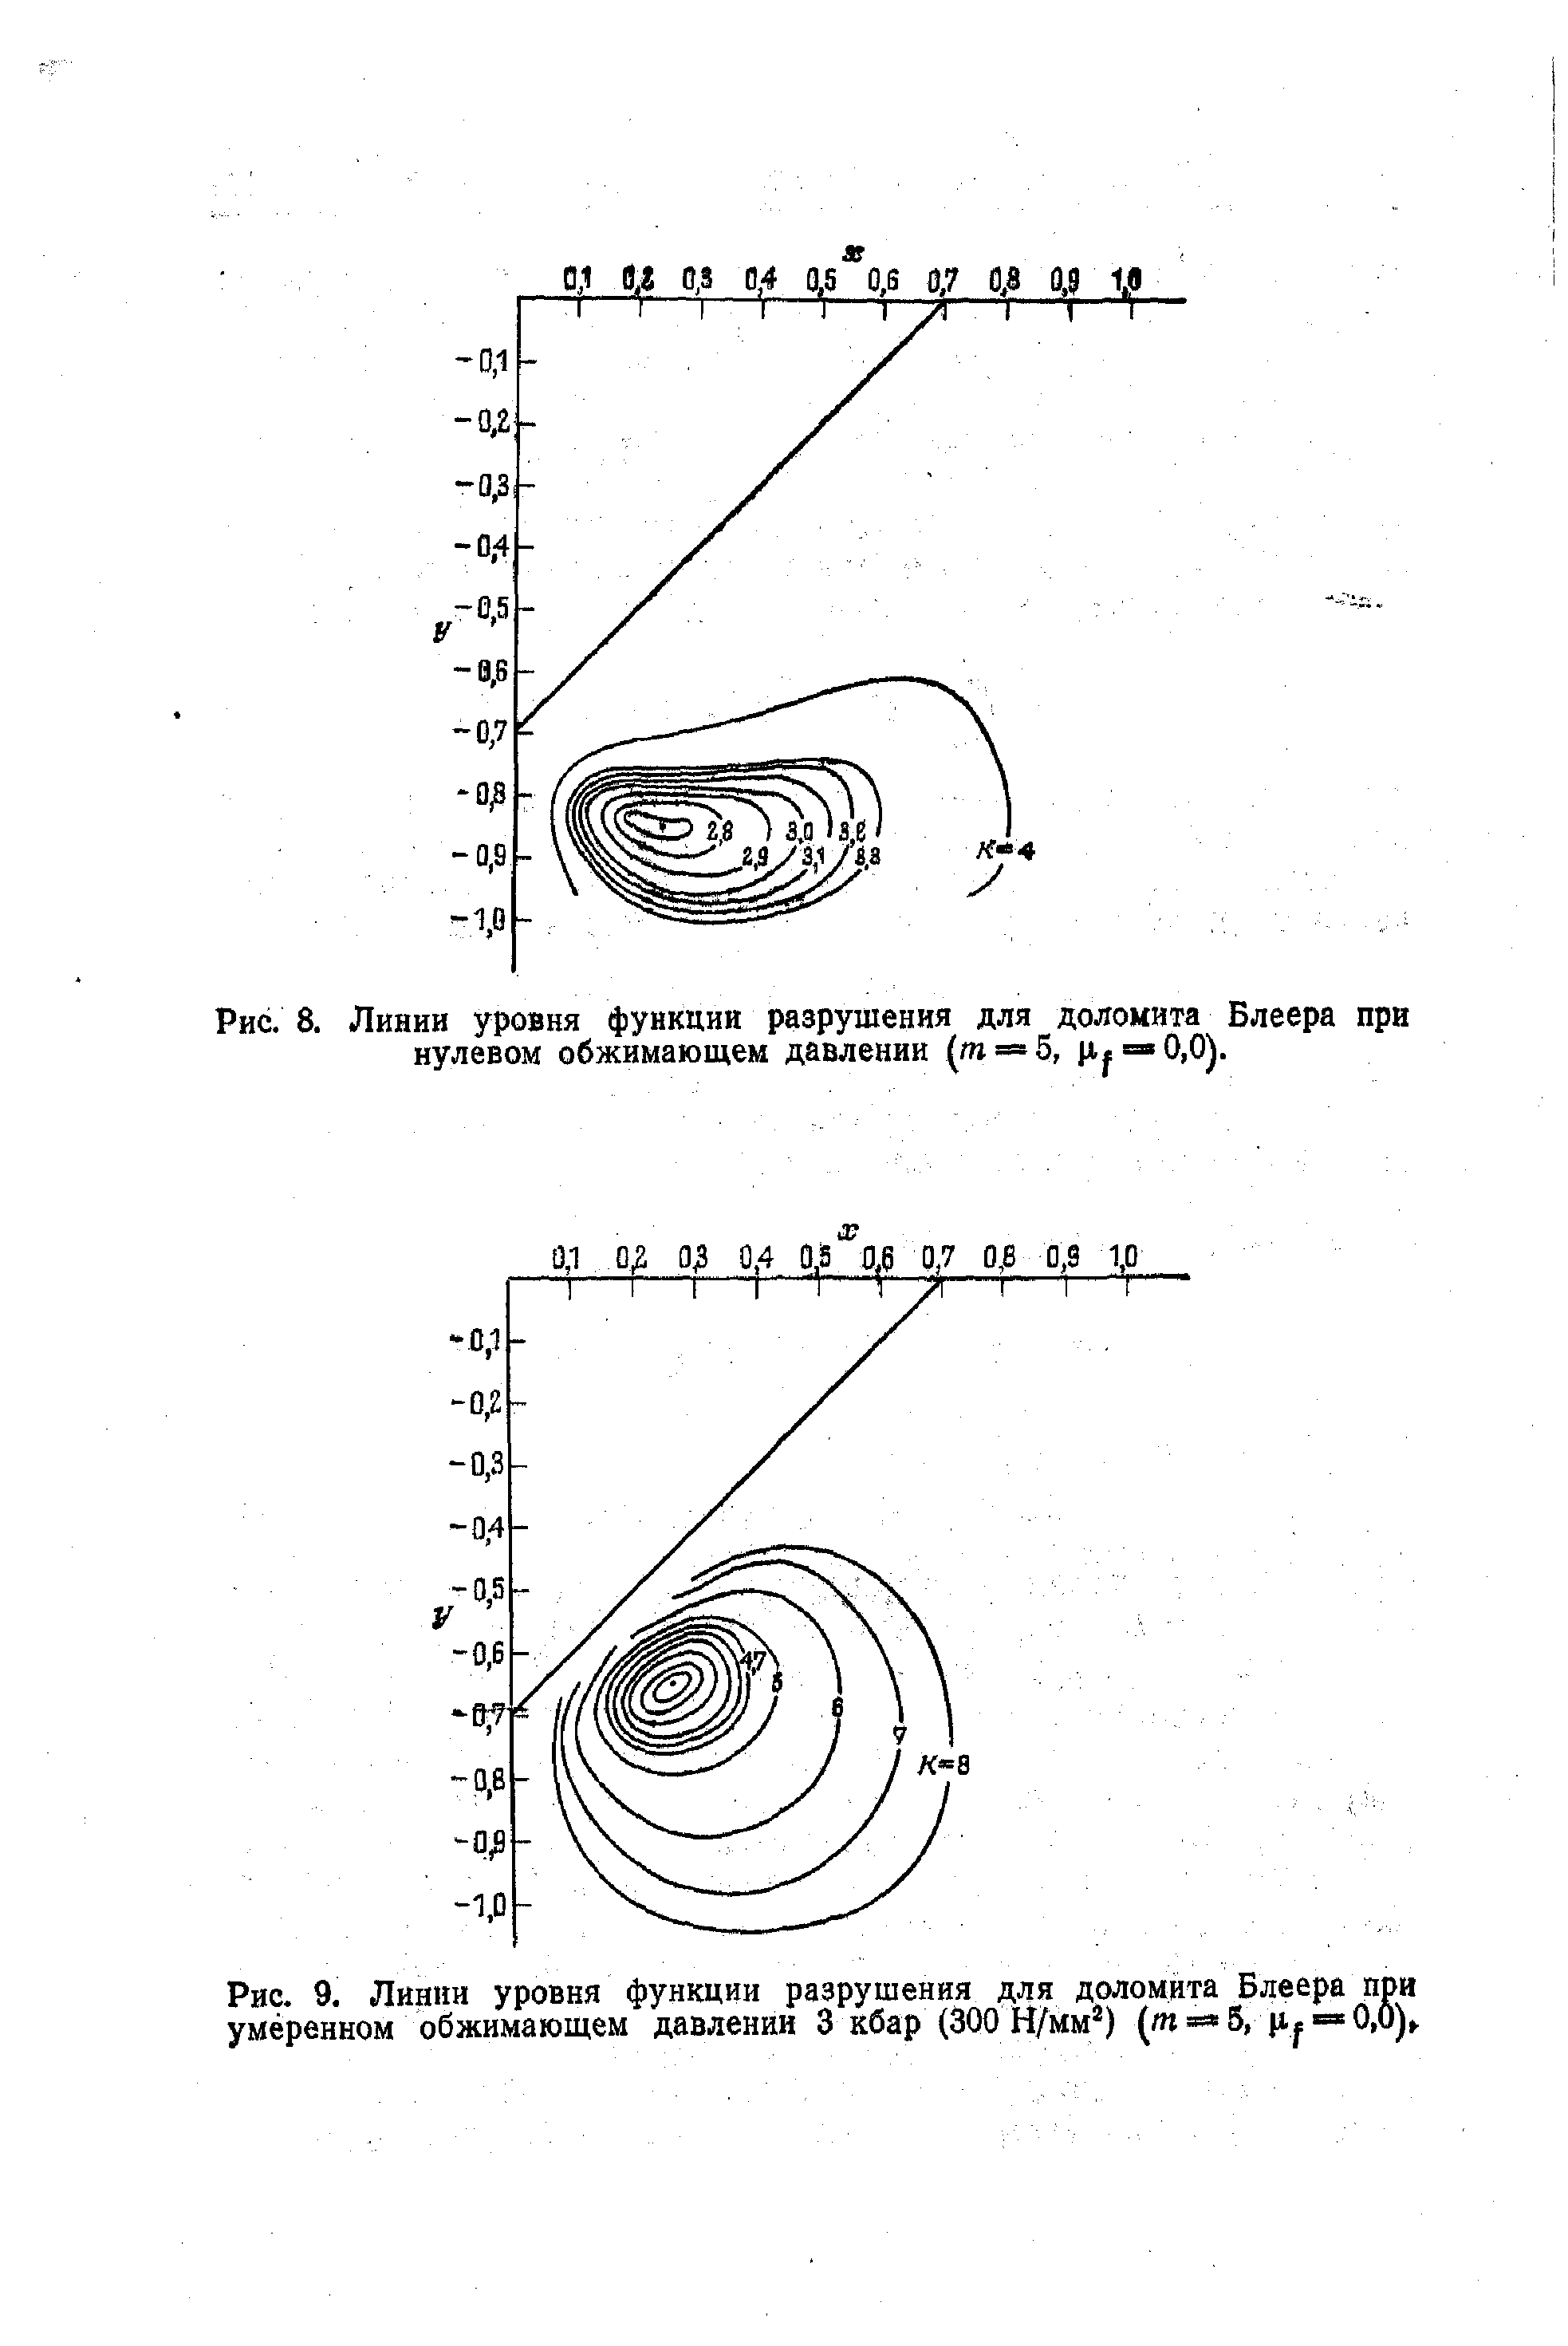 Рис. 9. Линии уровня функции разрушения для доломита Блеера при умеренном обжимающем давлении 3 кбар (300 Н/Мм ) (/п 5,
